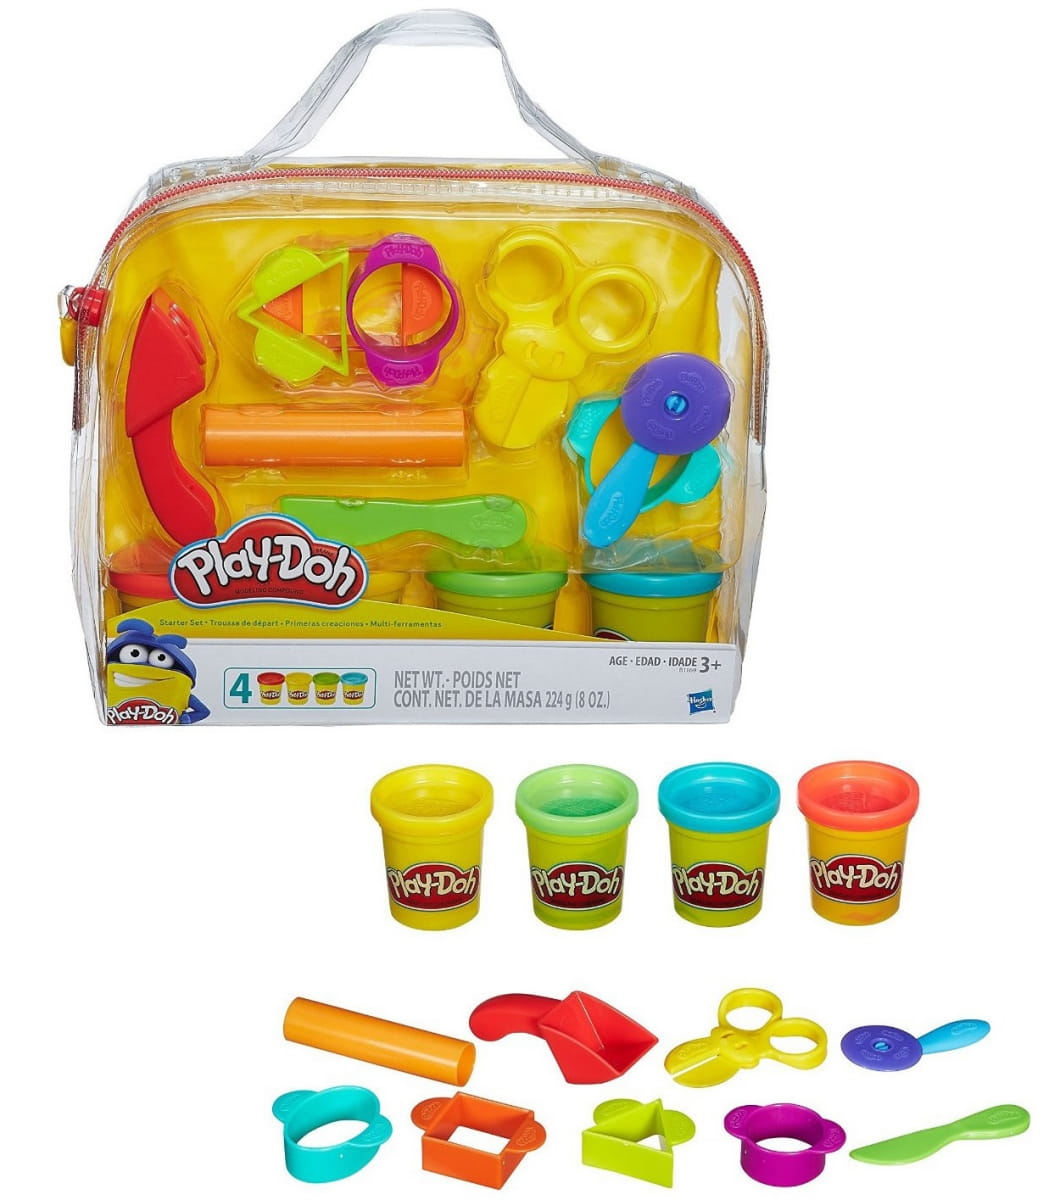      Play-Doh (Hasbro)